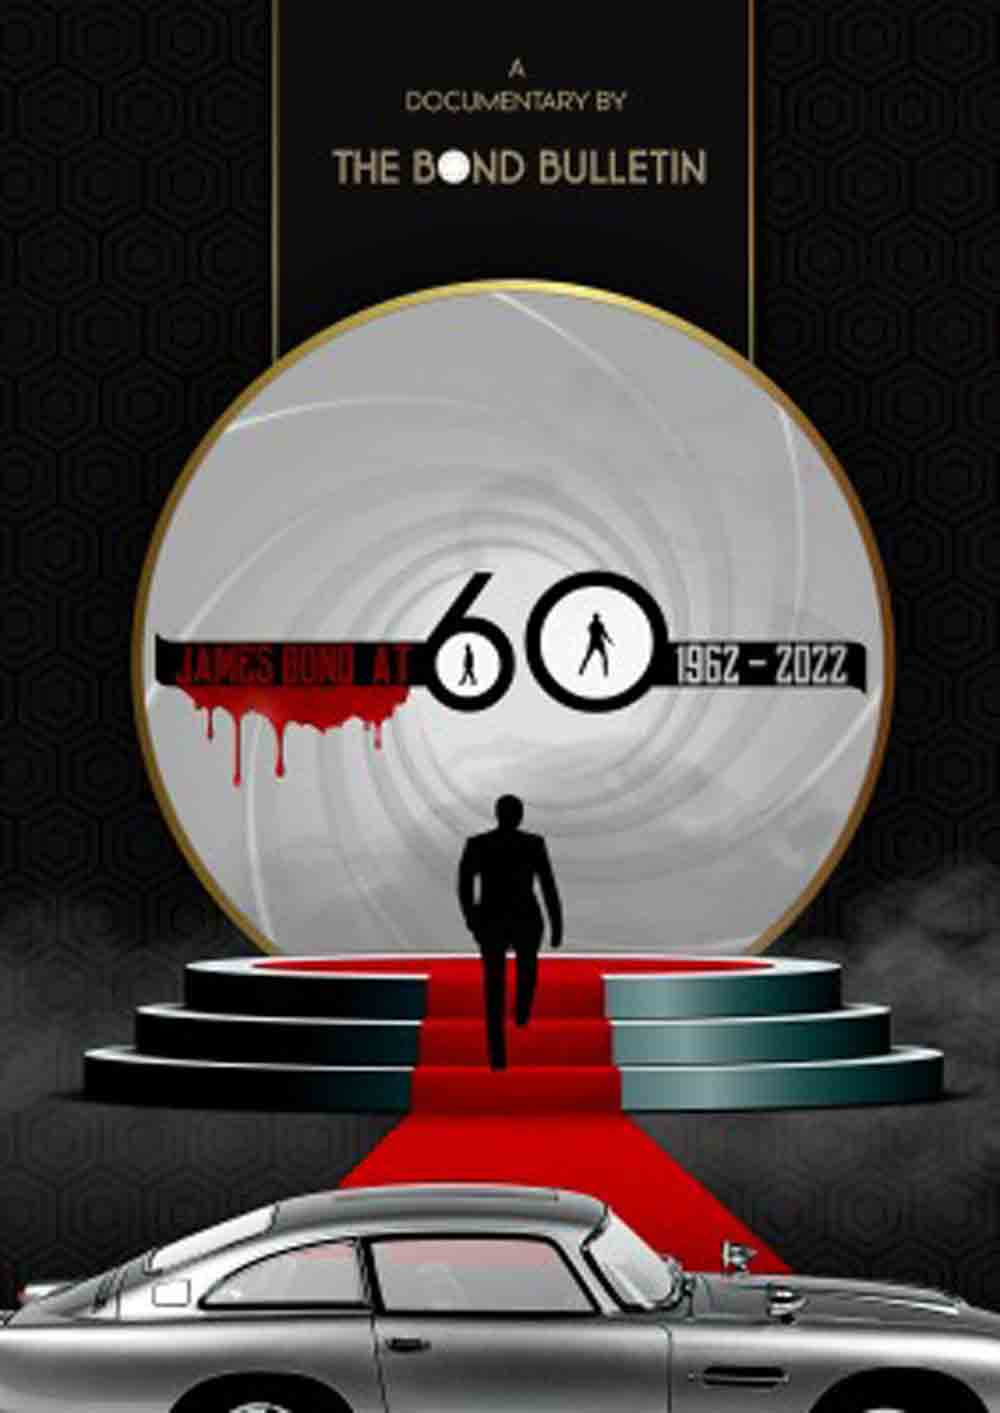 Fandokumentation zum 60. Geburtstag von James Bond wird am 5. Oktober 2022 veröffentlicht